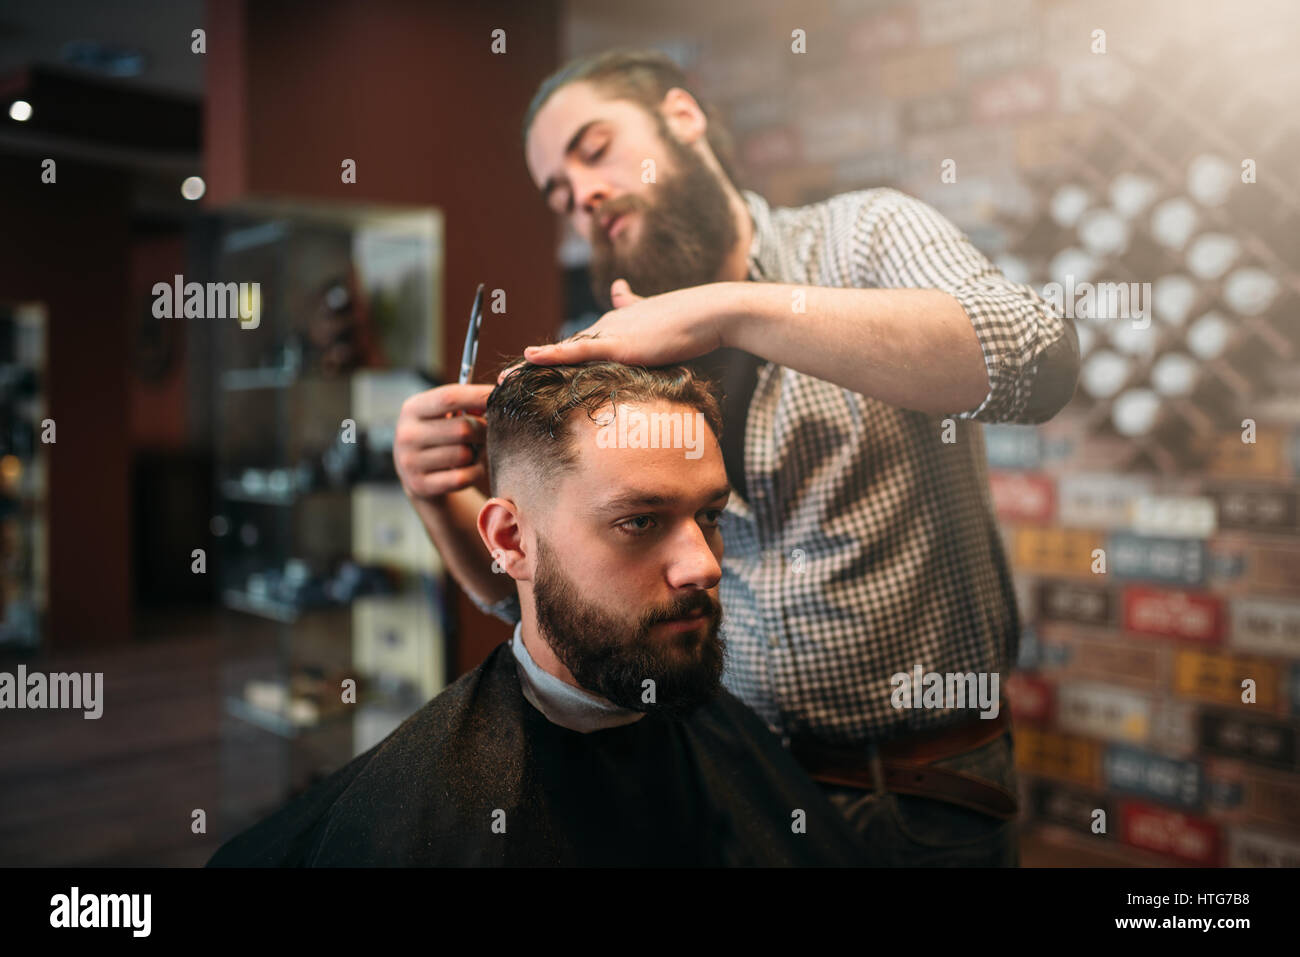 Coiffeur taglio a forbice dei capelli del cliente man in black salon cape, barbiere sullo sfondo Foto Stock